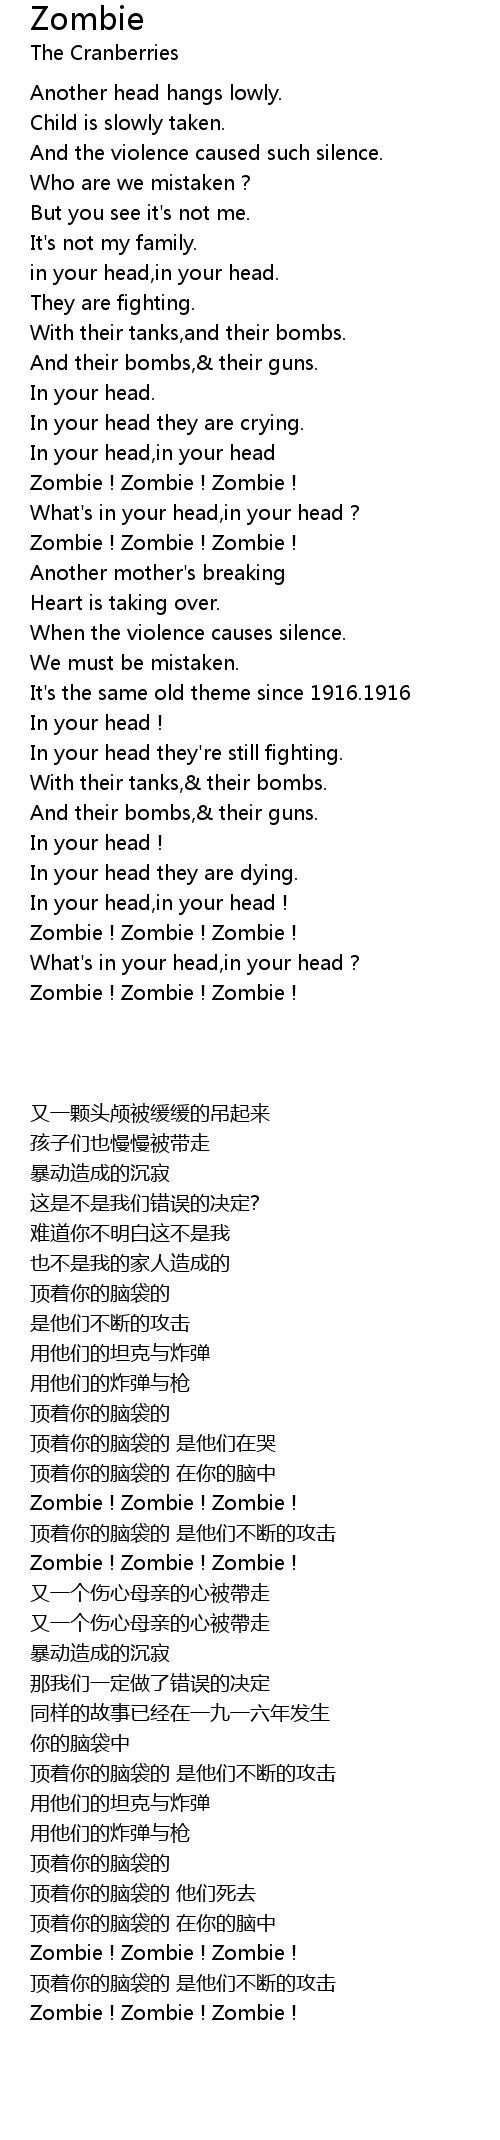 The Cranberries – Zombie Lyrics